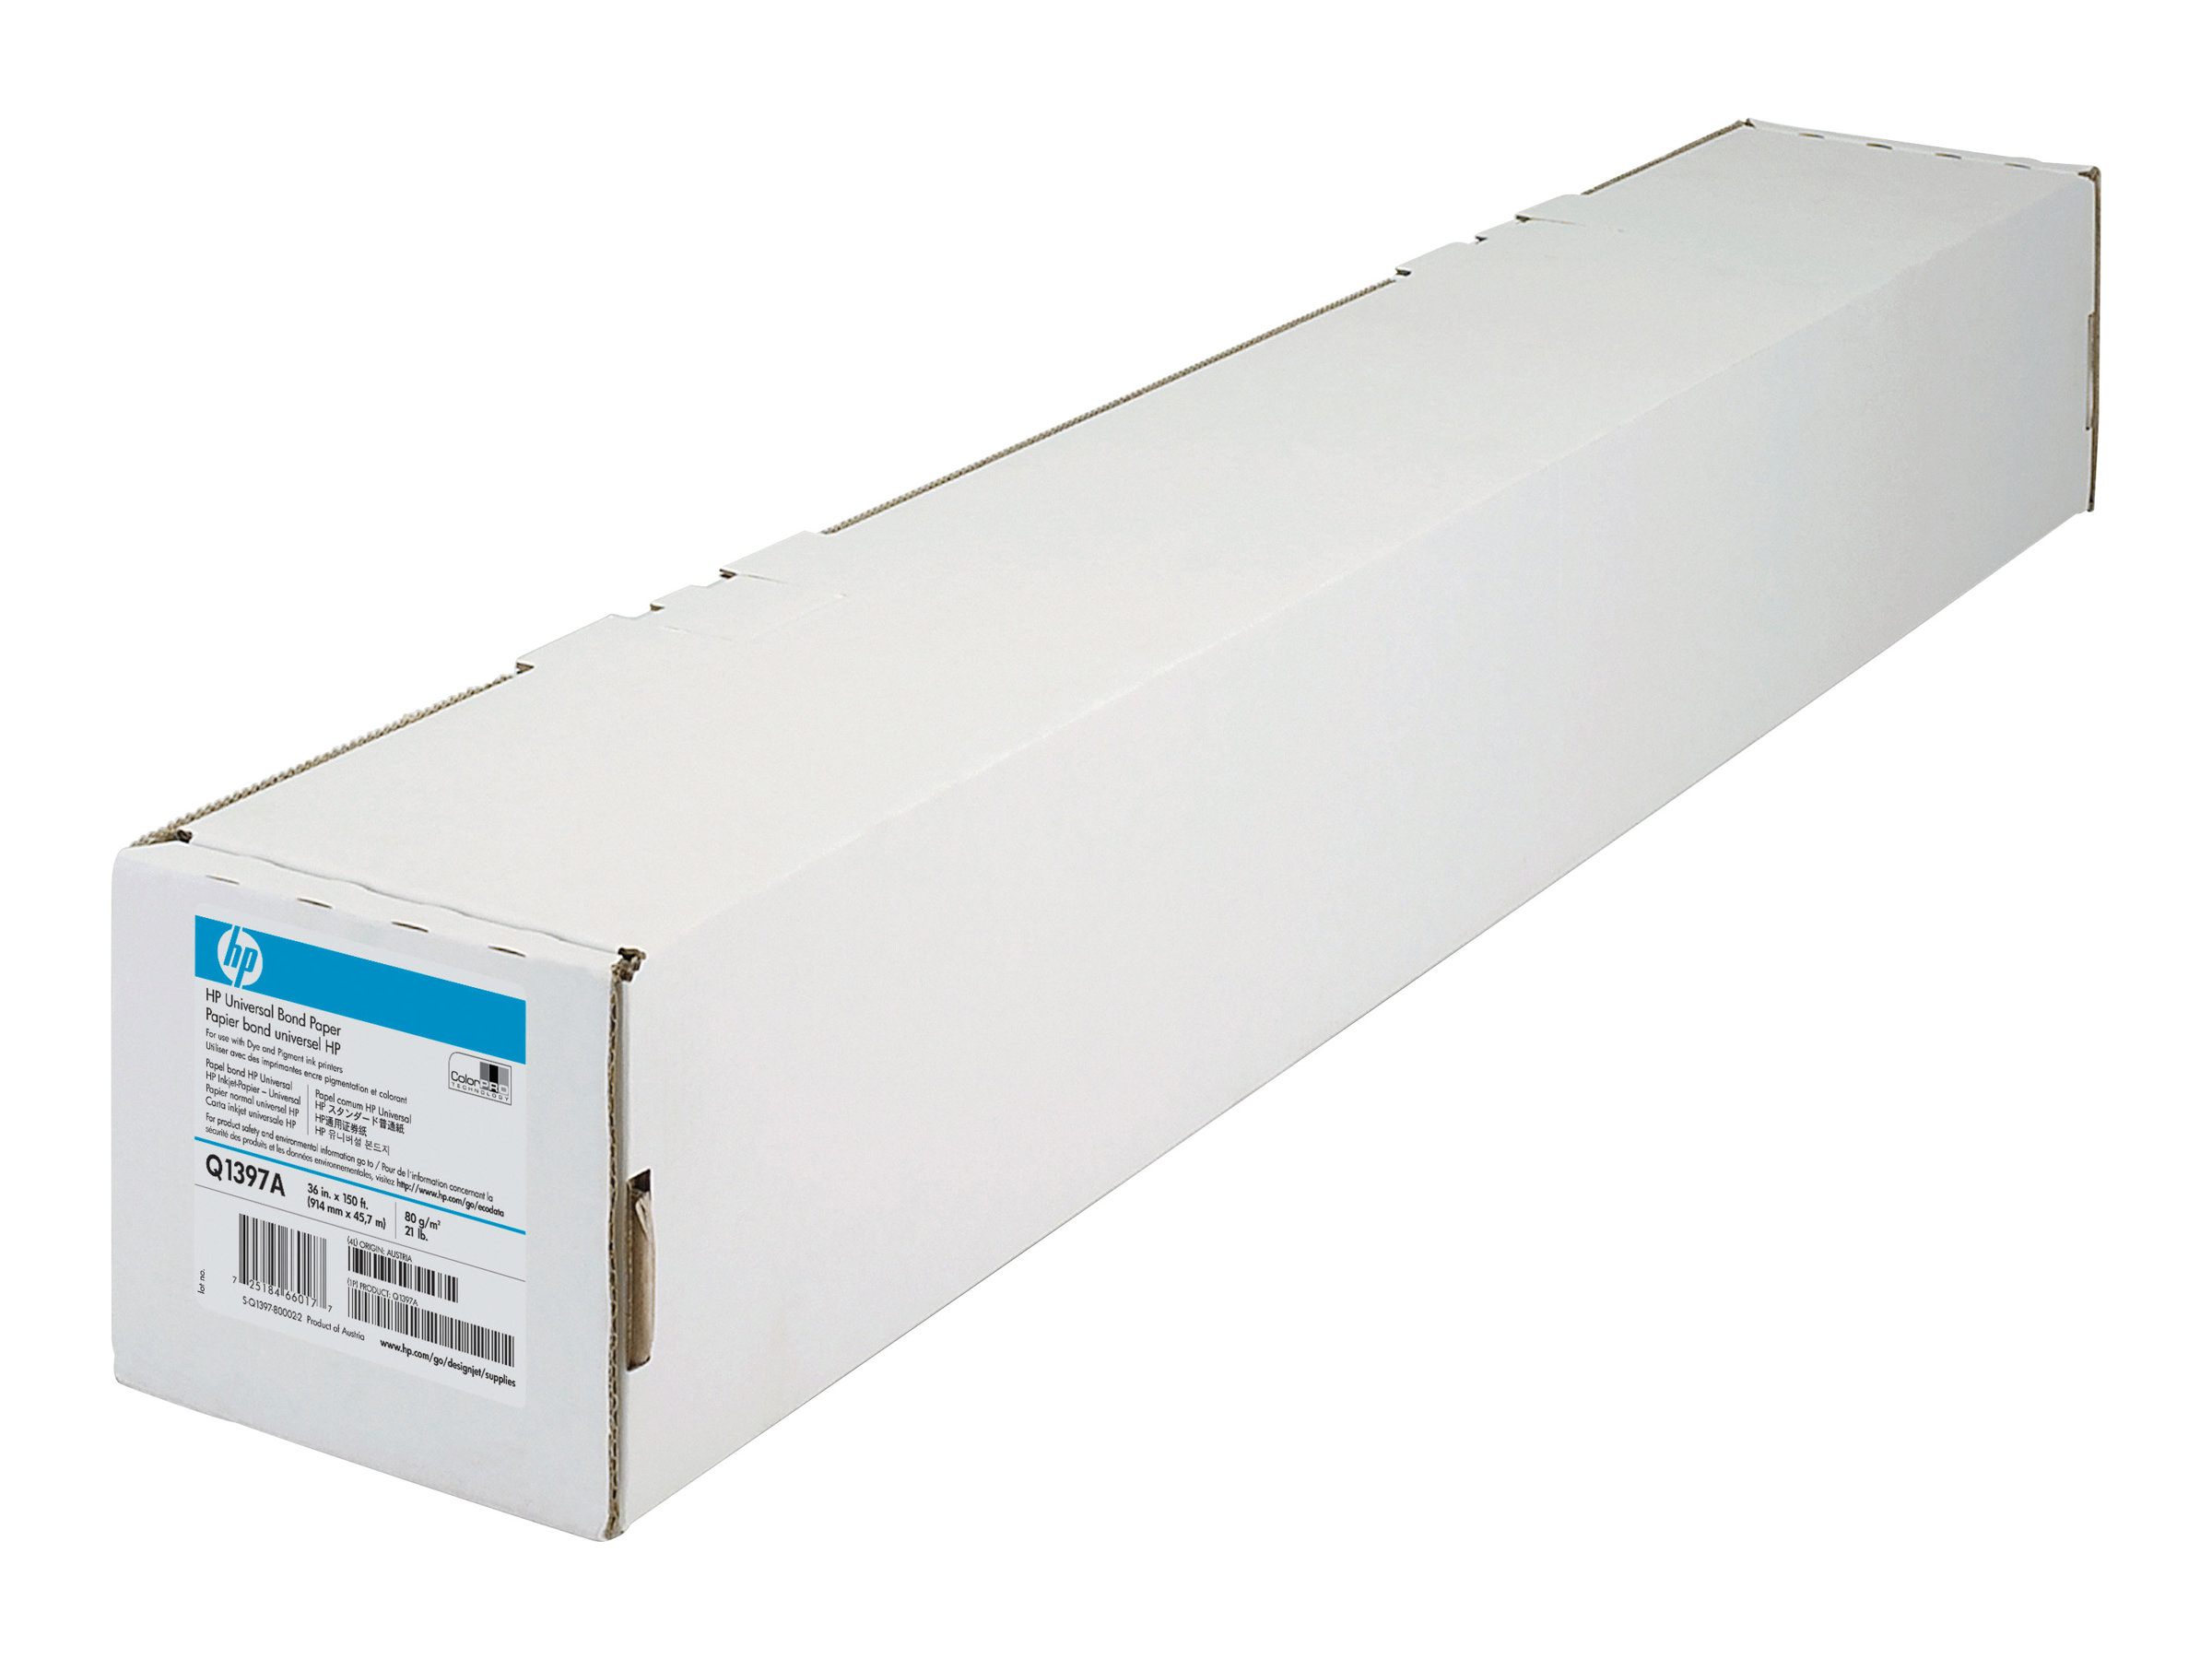 HP Universal Bond Paper - Rolle A1 (59,4 cm x 91,4 m) - 80 g/m - 1 Rolle(n) Bondpapier - fr DesignJet 1050, 1055, 4000, 4500, 